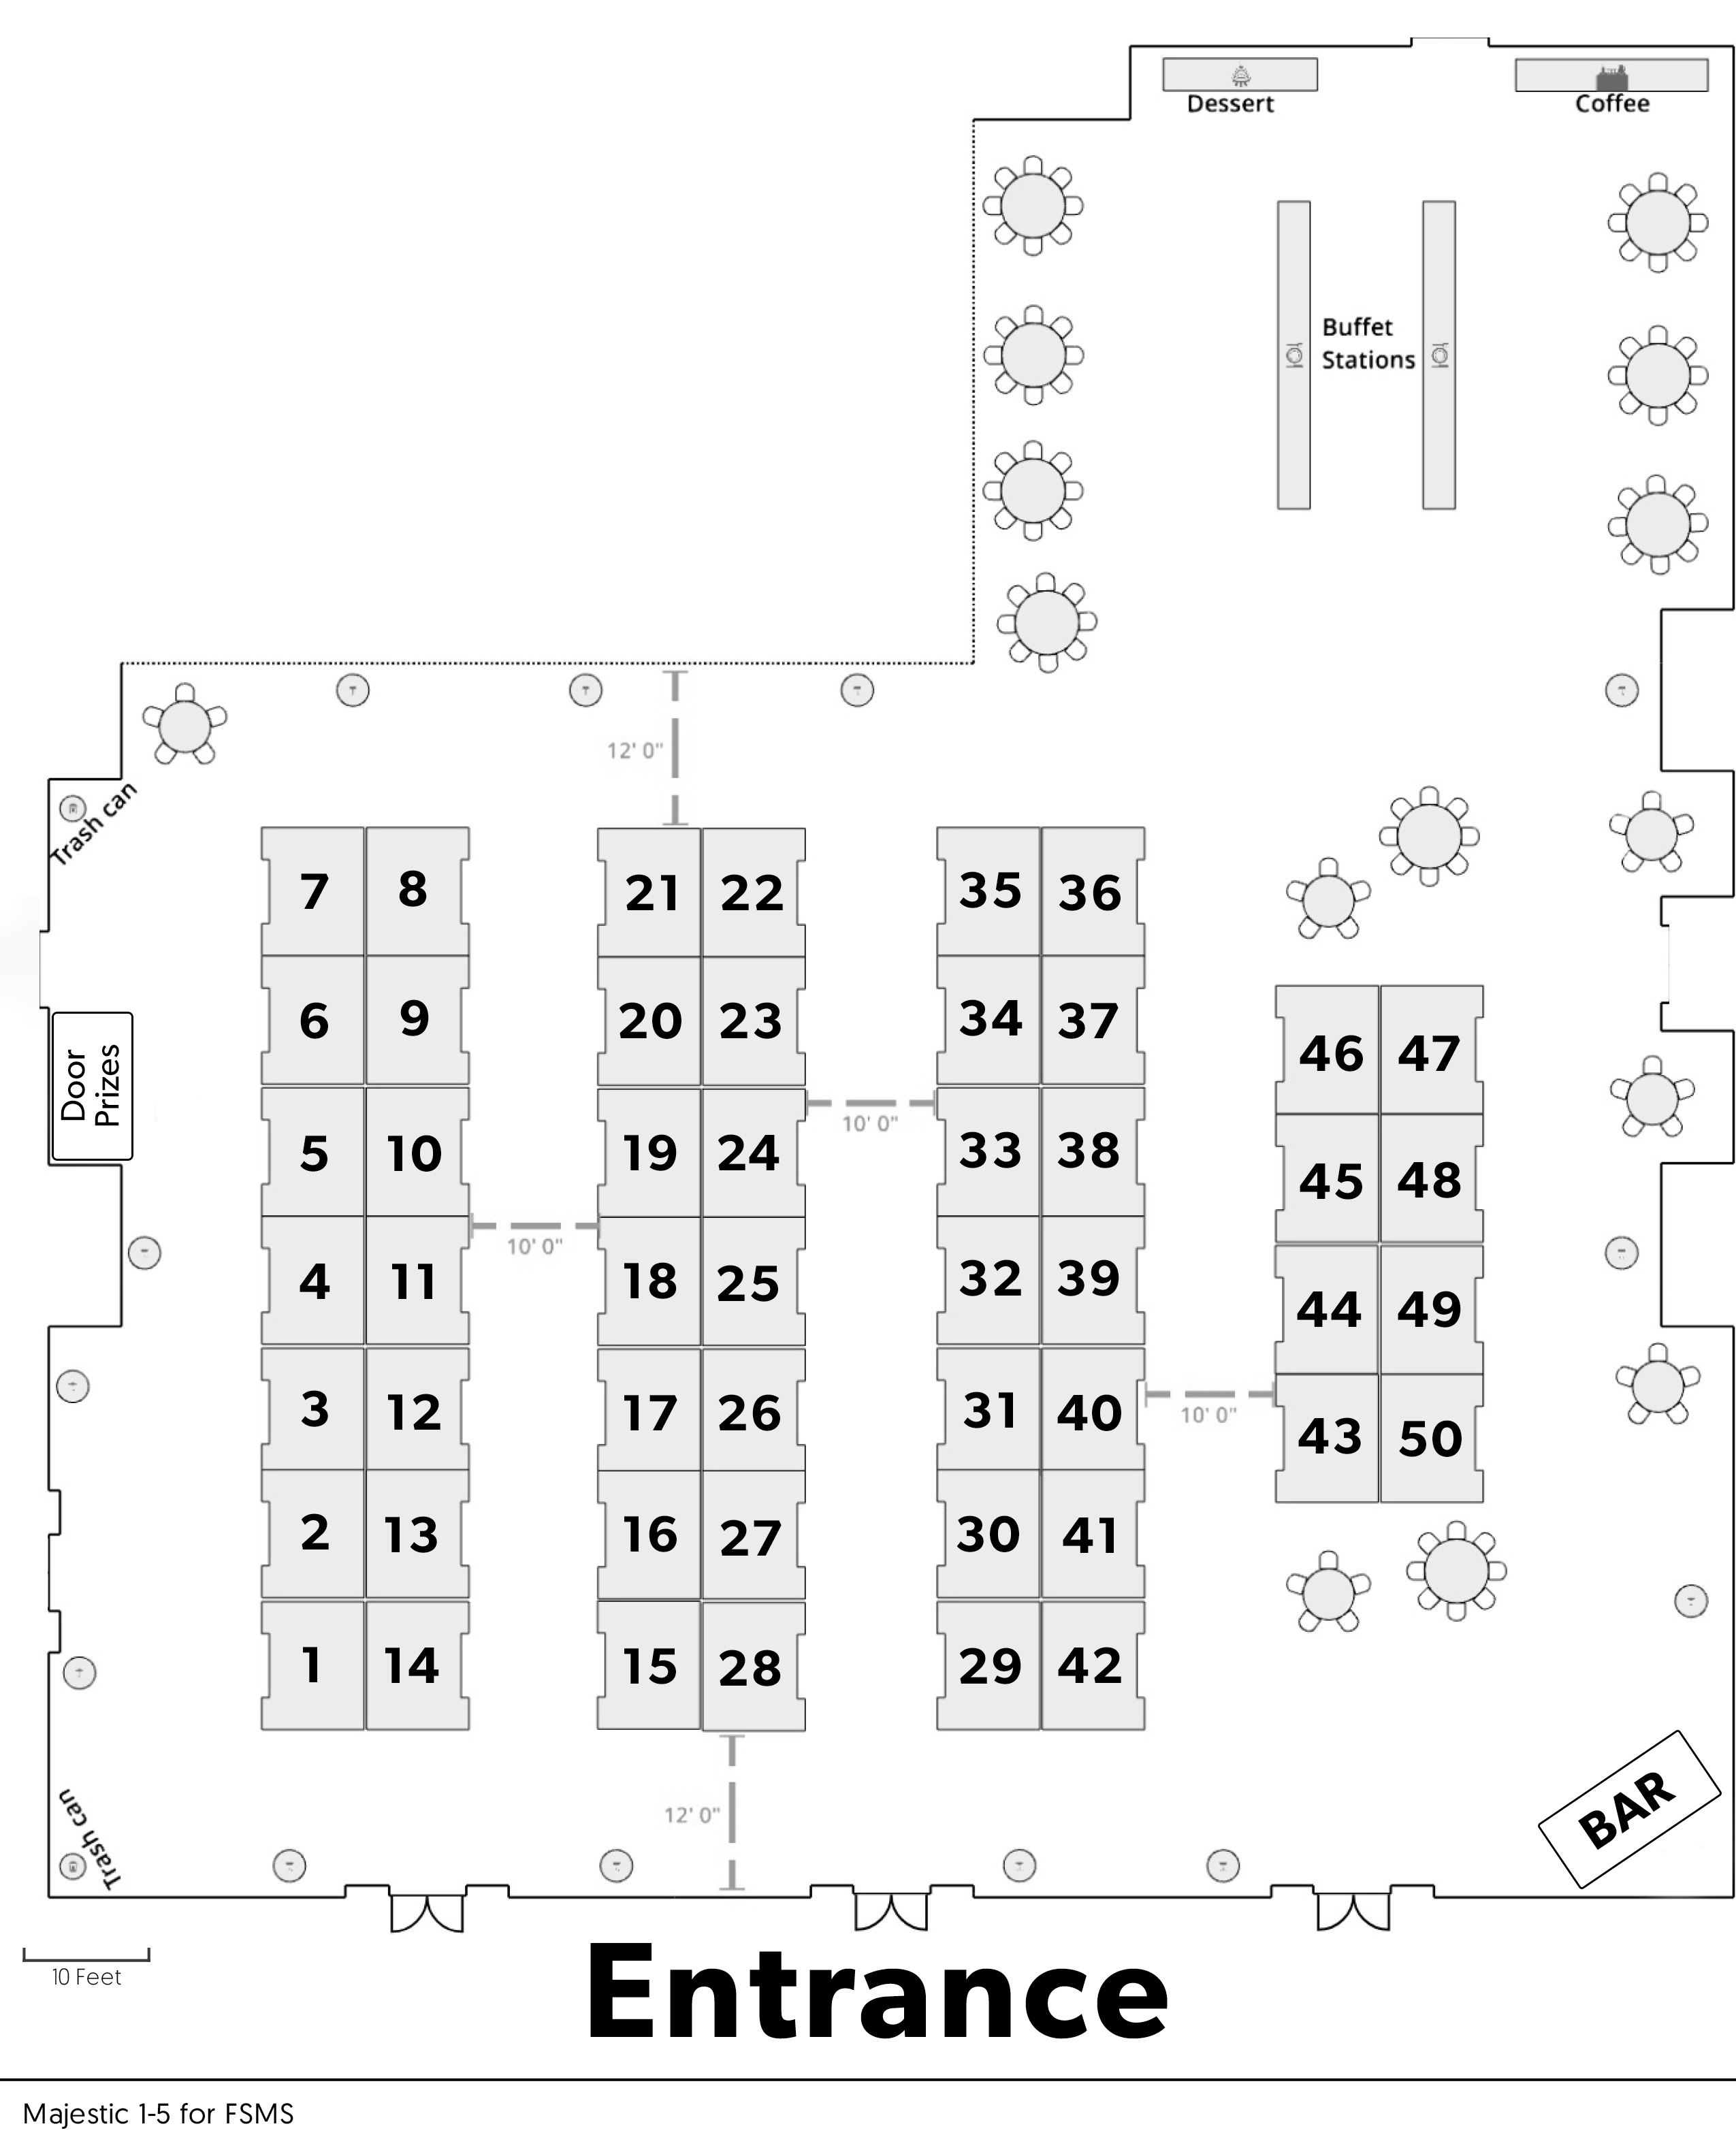 exhibit hall layout